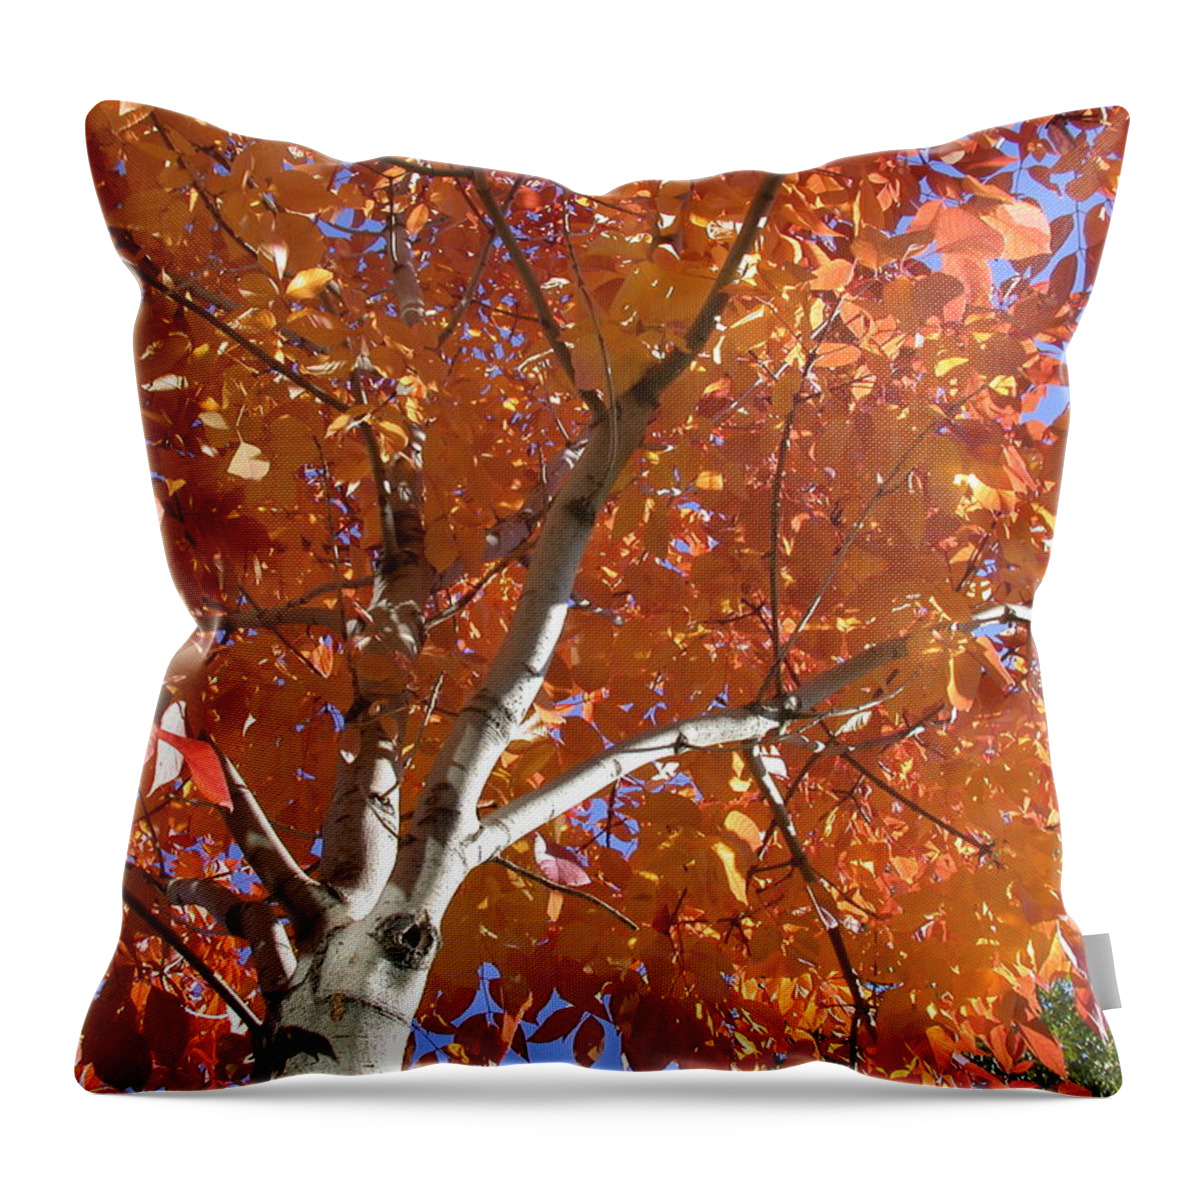 Aspen Throw Pillow featuring the photograph Autumn Aspen #1 by Shane Bechler